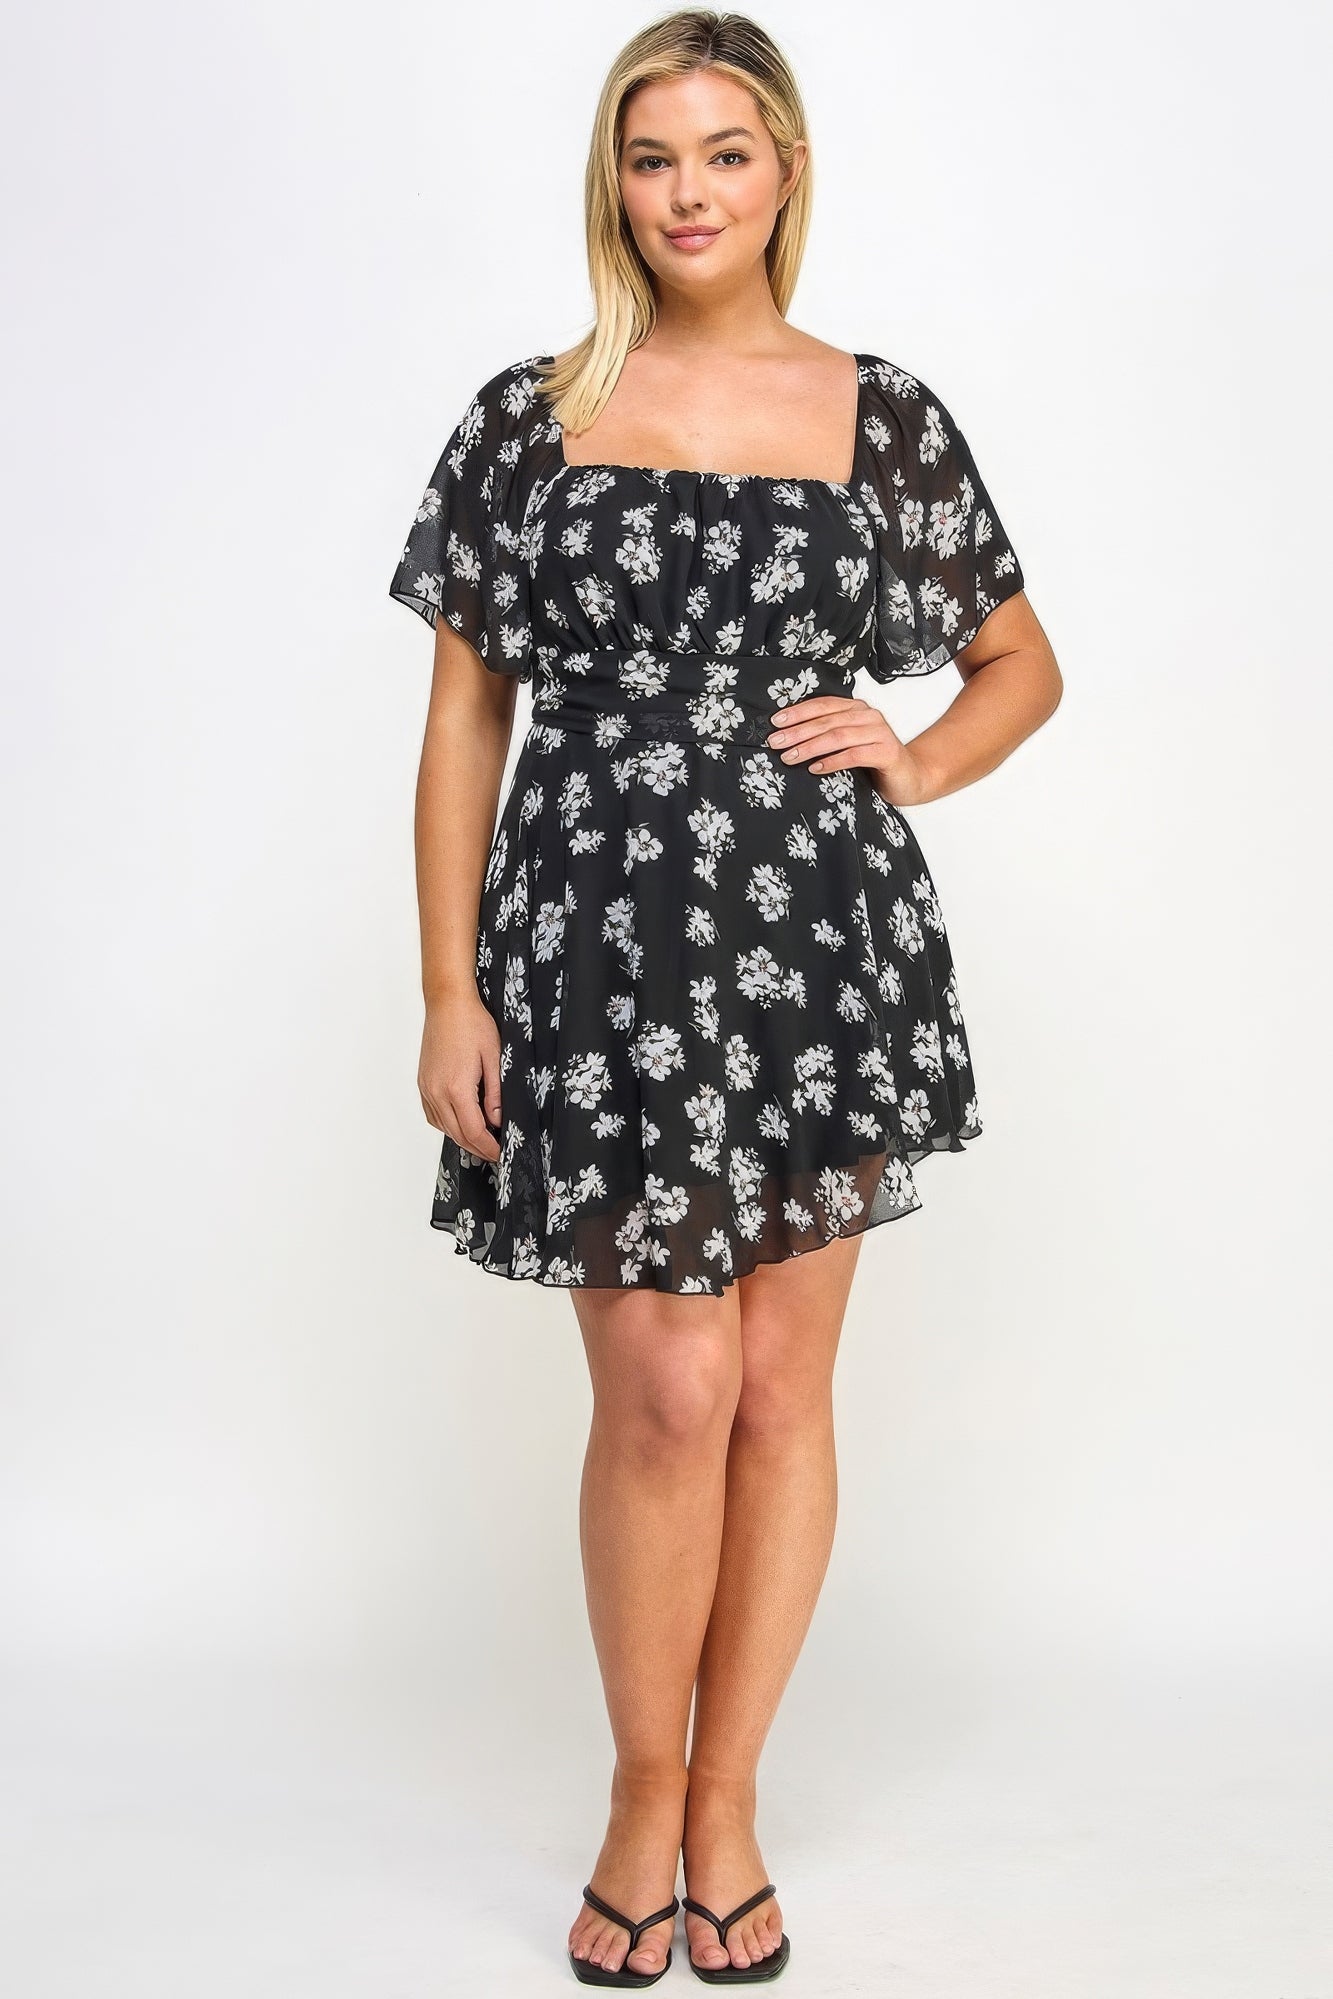 - Voluptuous (+) Chiffon Women's Plus Size Floral Dress - womens plus size dress at TFC&H Co.